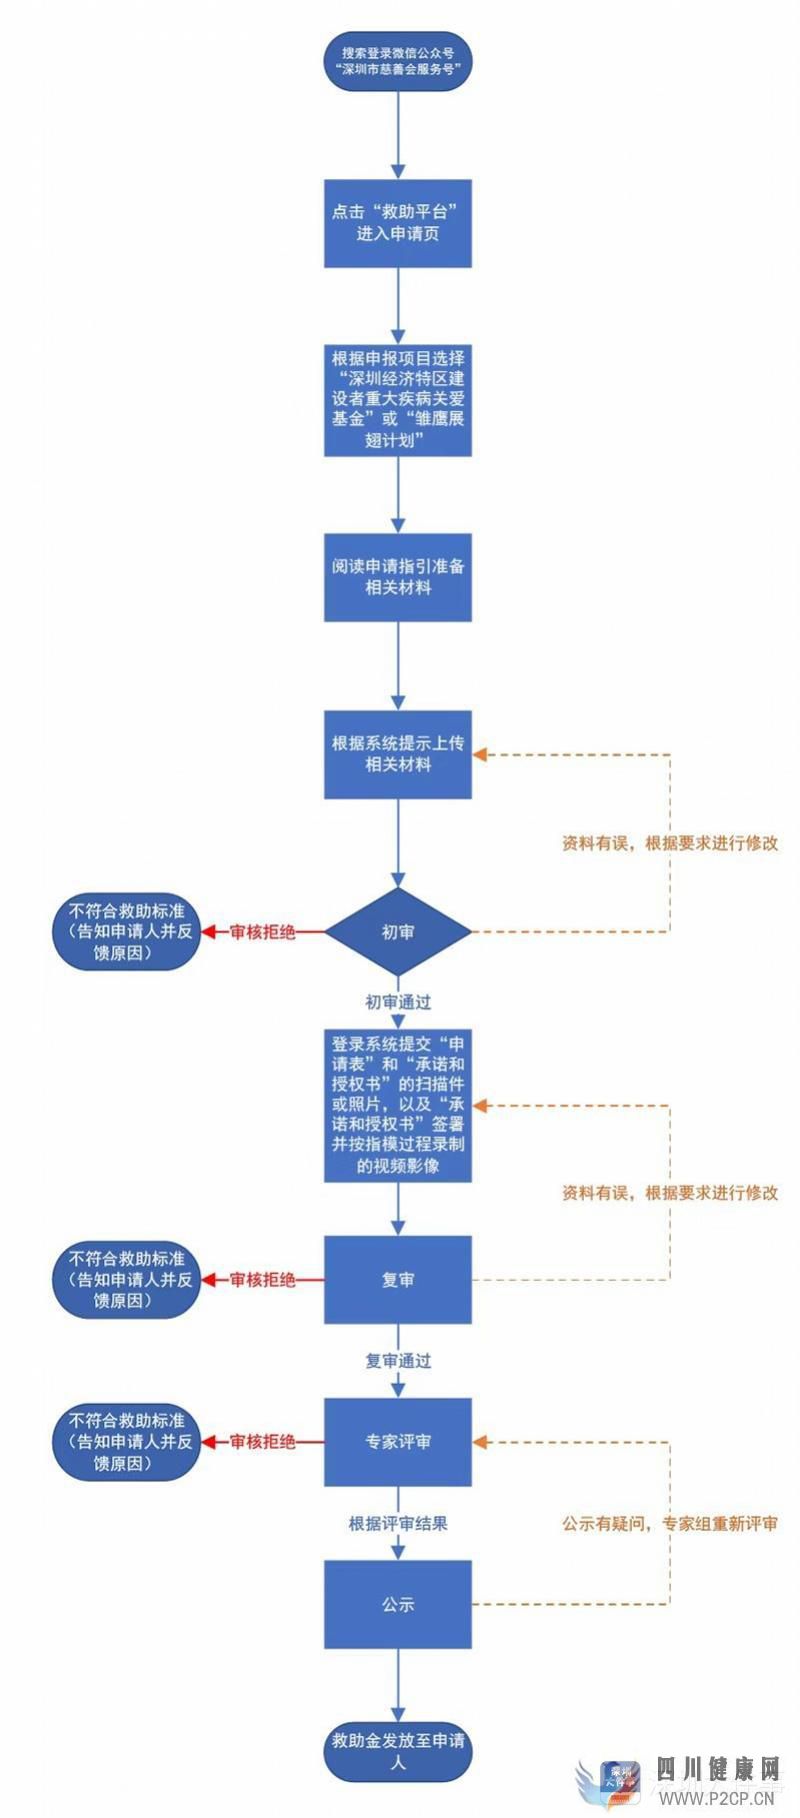 深圳建设者重大疾病关爱基金开放申请，每人最高资助5万元(图1)